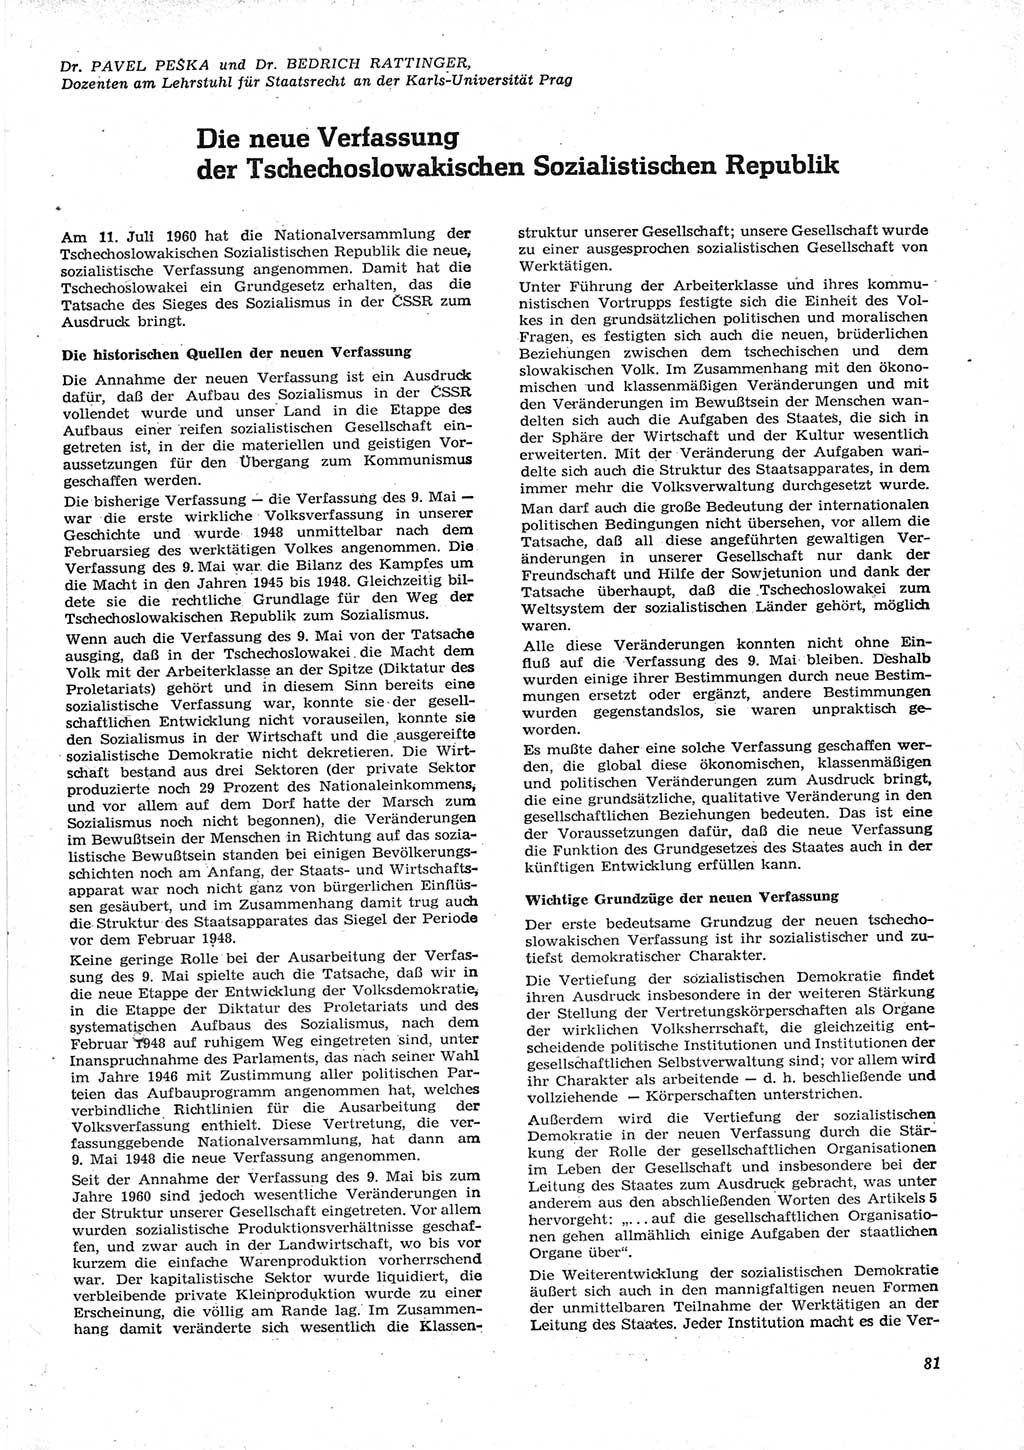 Neue Justiz (NJ), Zeitschrift für Recht und Rechtswissenschaft [Deutsche Demokratische Republik (DDR)], 15. Jahrgang 1961, Seite 81 (NJ DDR 1961, S. 81)